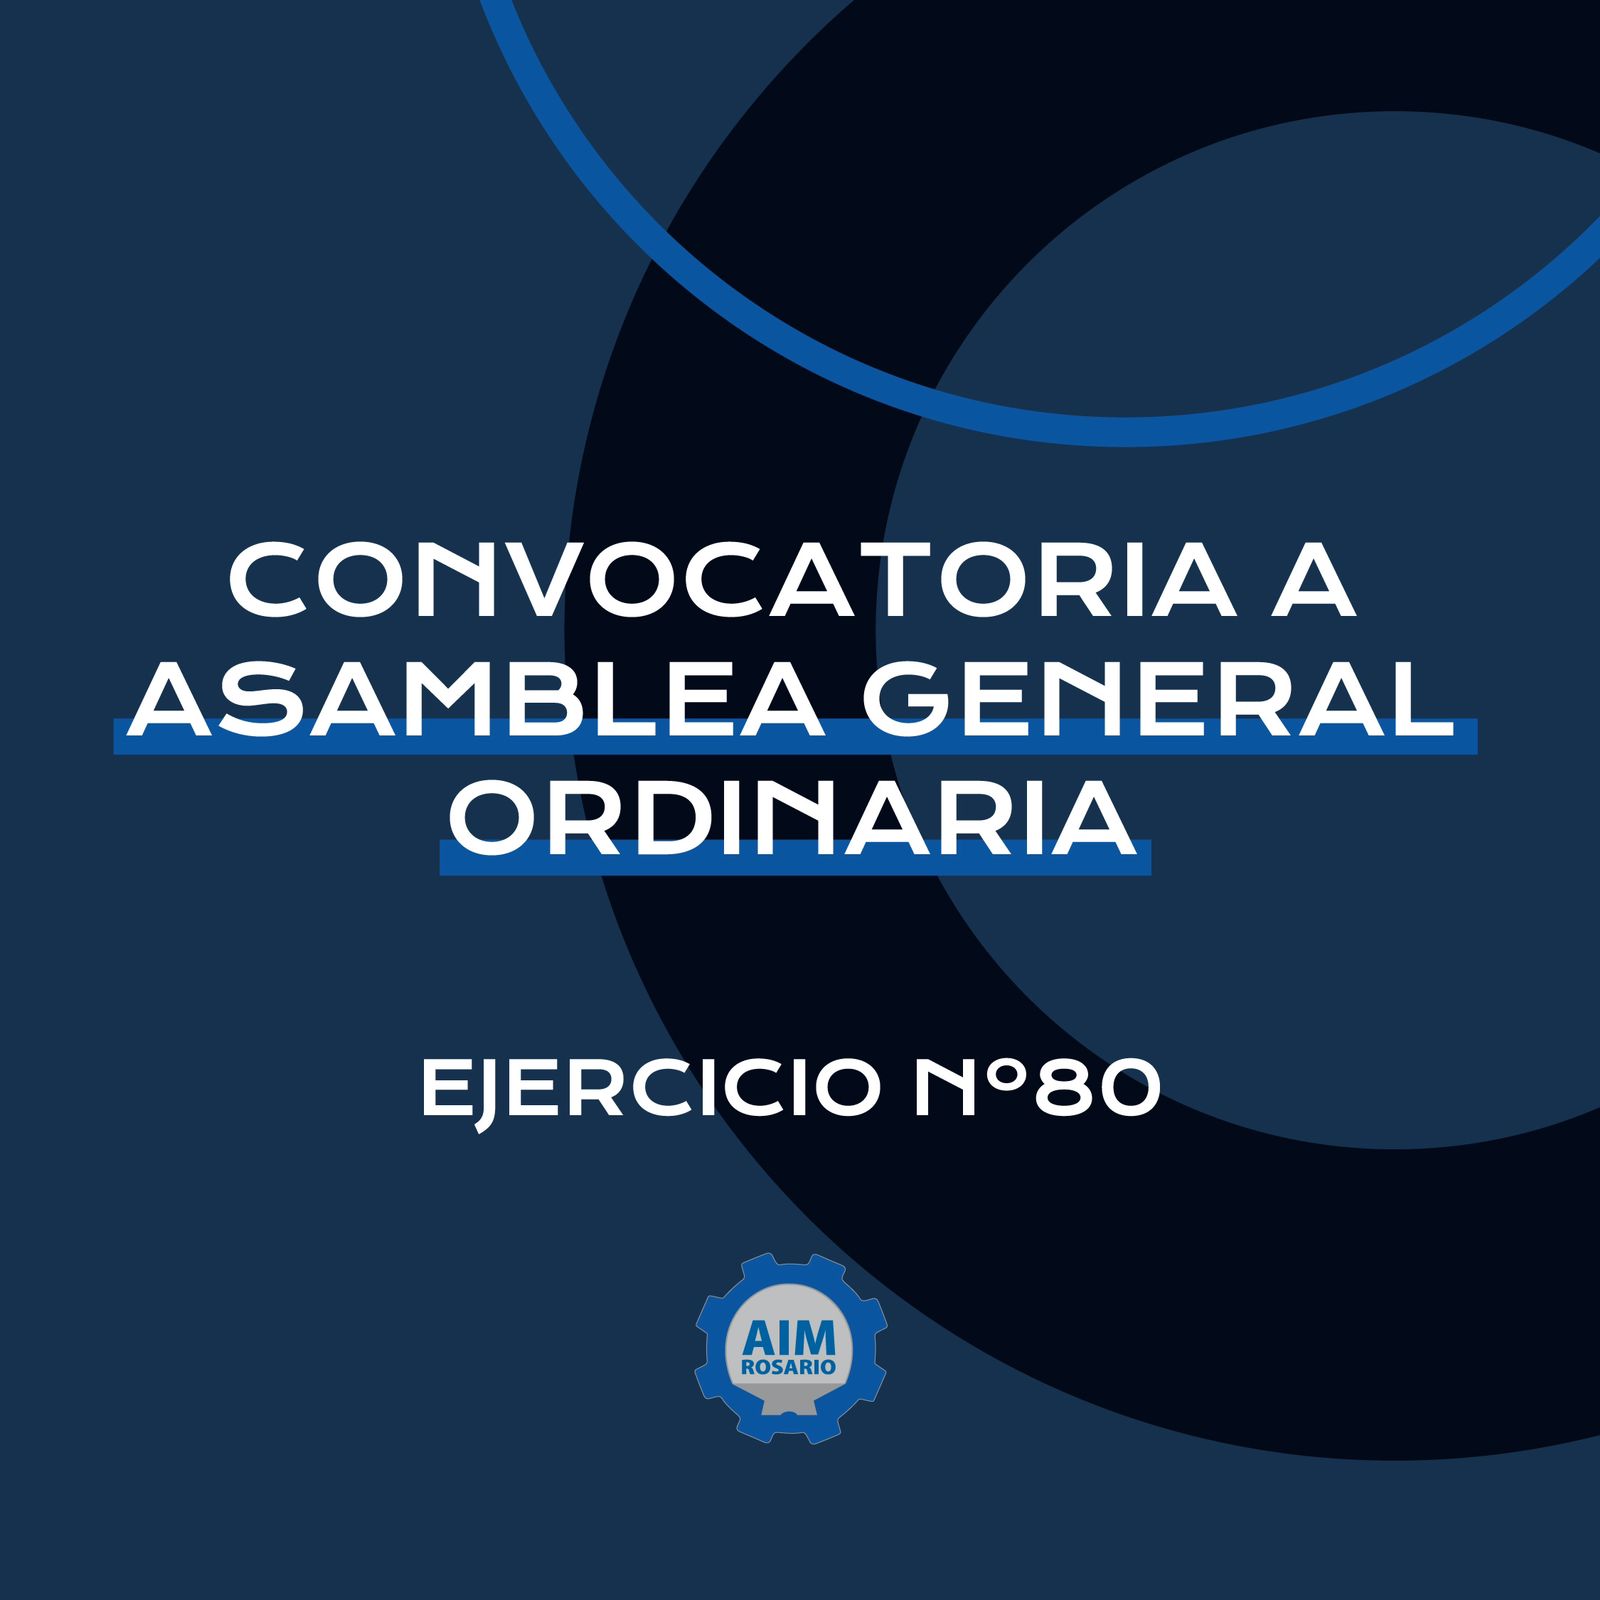  CONVOCATORIA A ASAMBLEA GENERAL ORDINARIA DE AIM ROSARIO - EJERCICIO Nº80